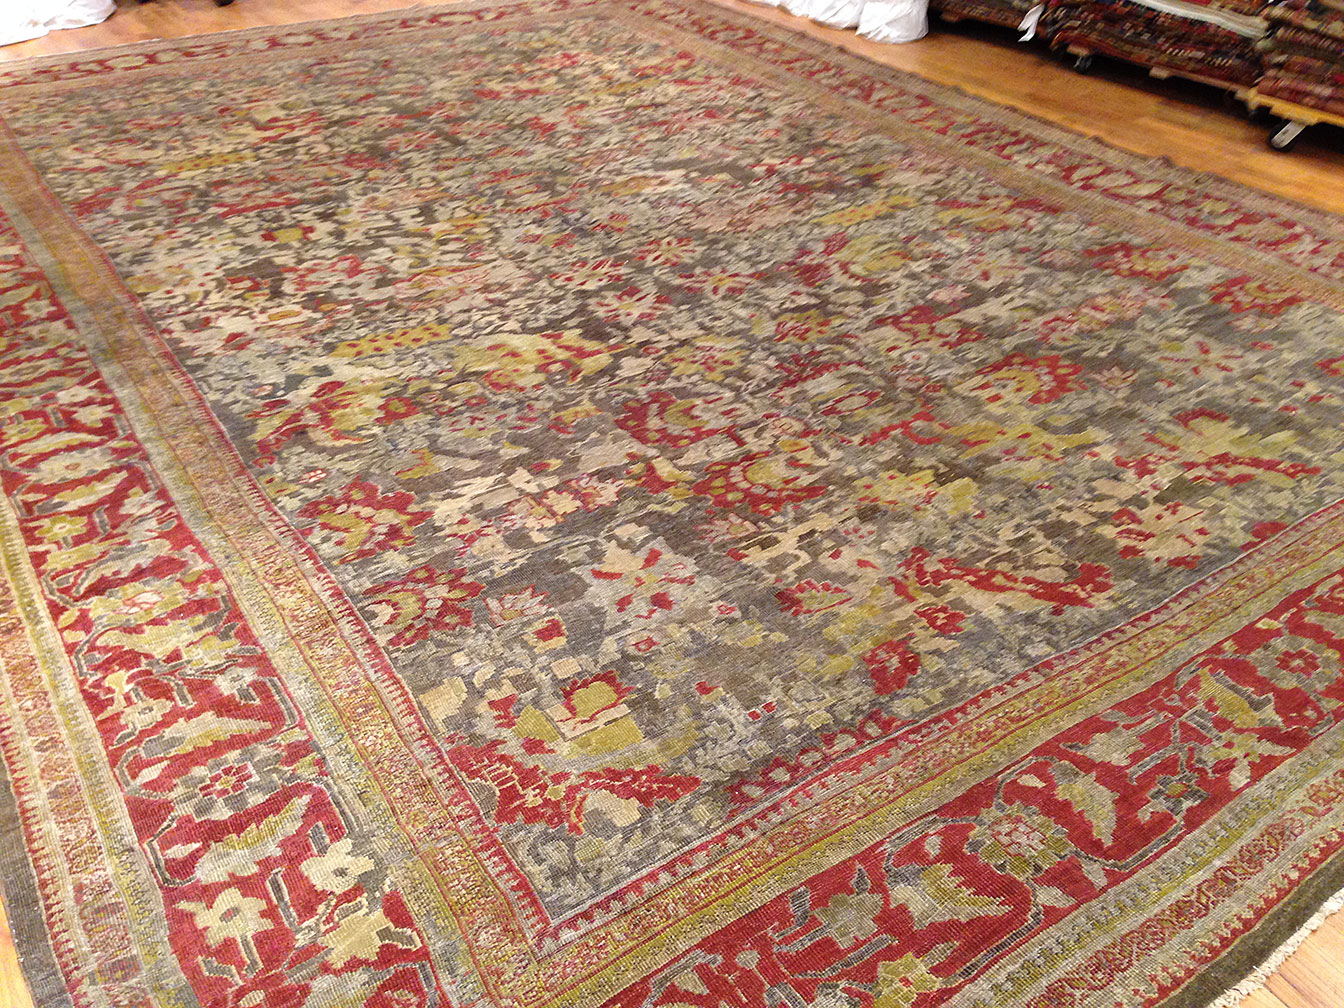 Antique sultan abad Carpet - # 9331